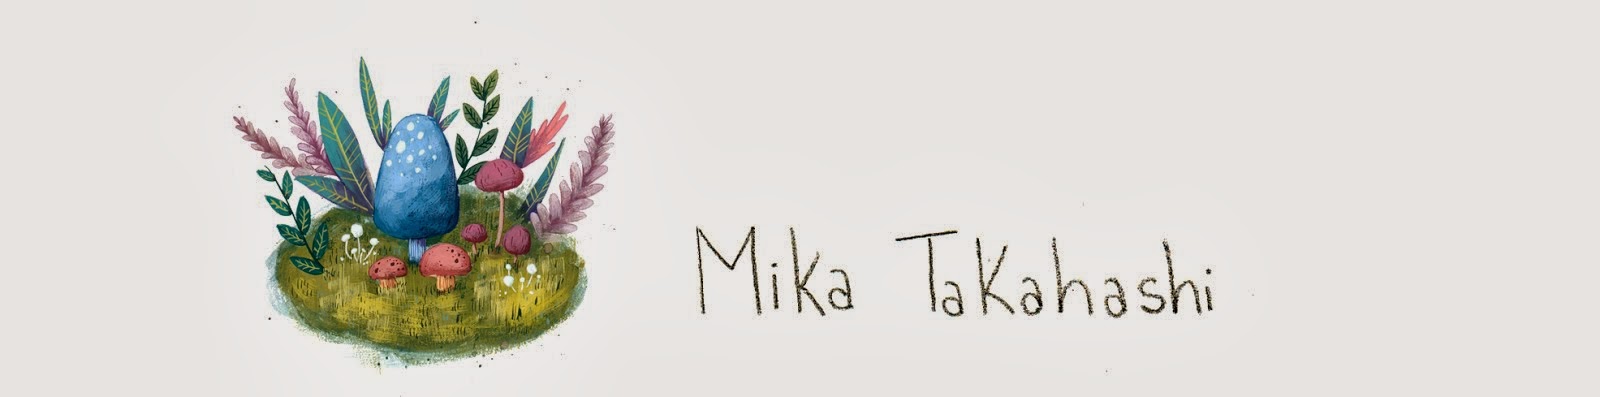 Mika Takahashi